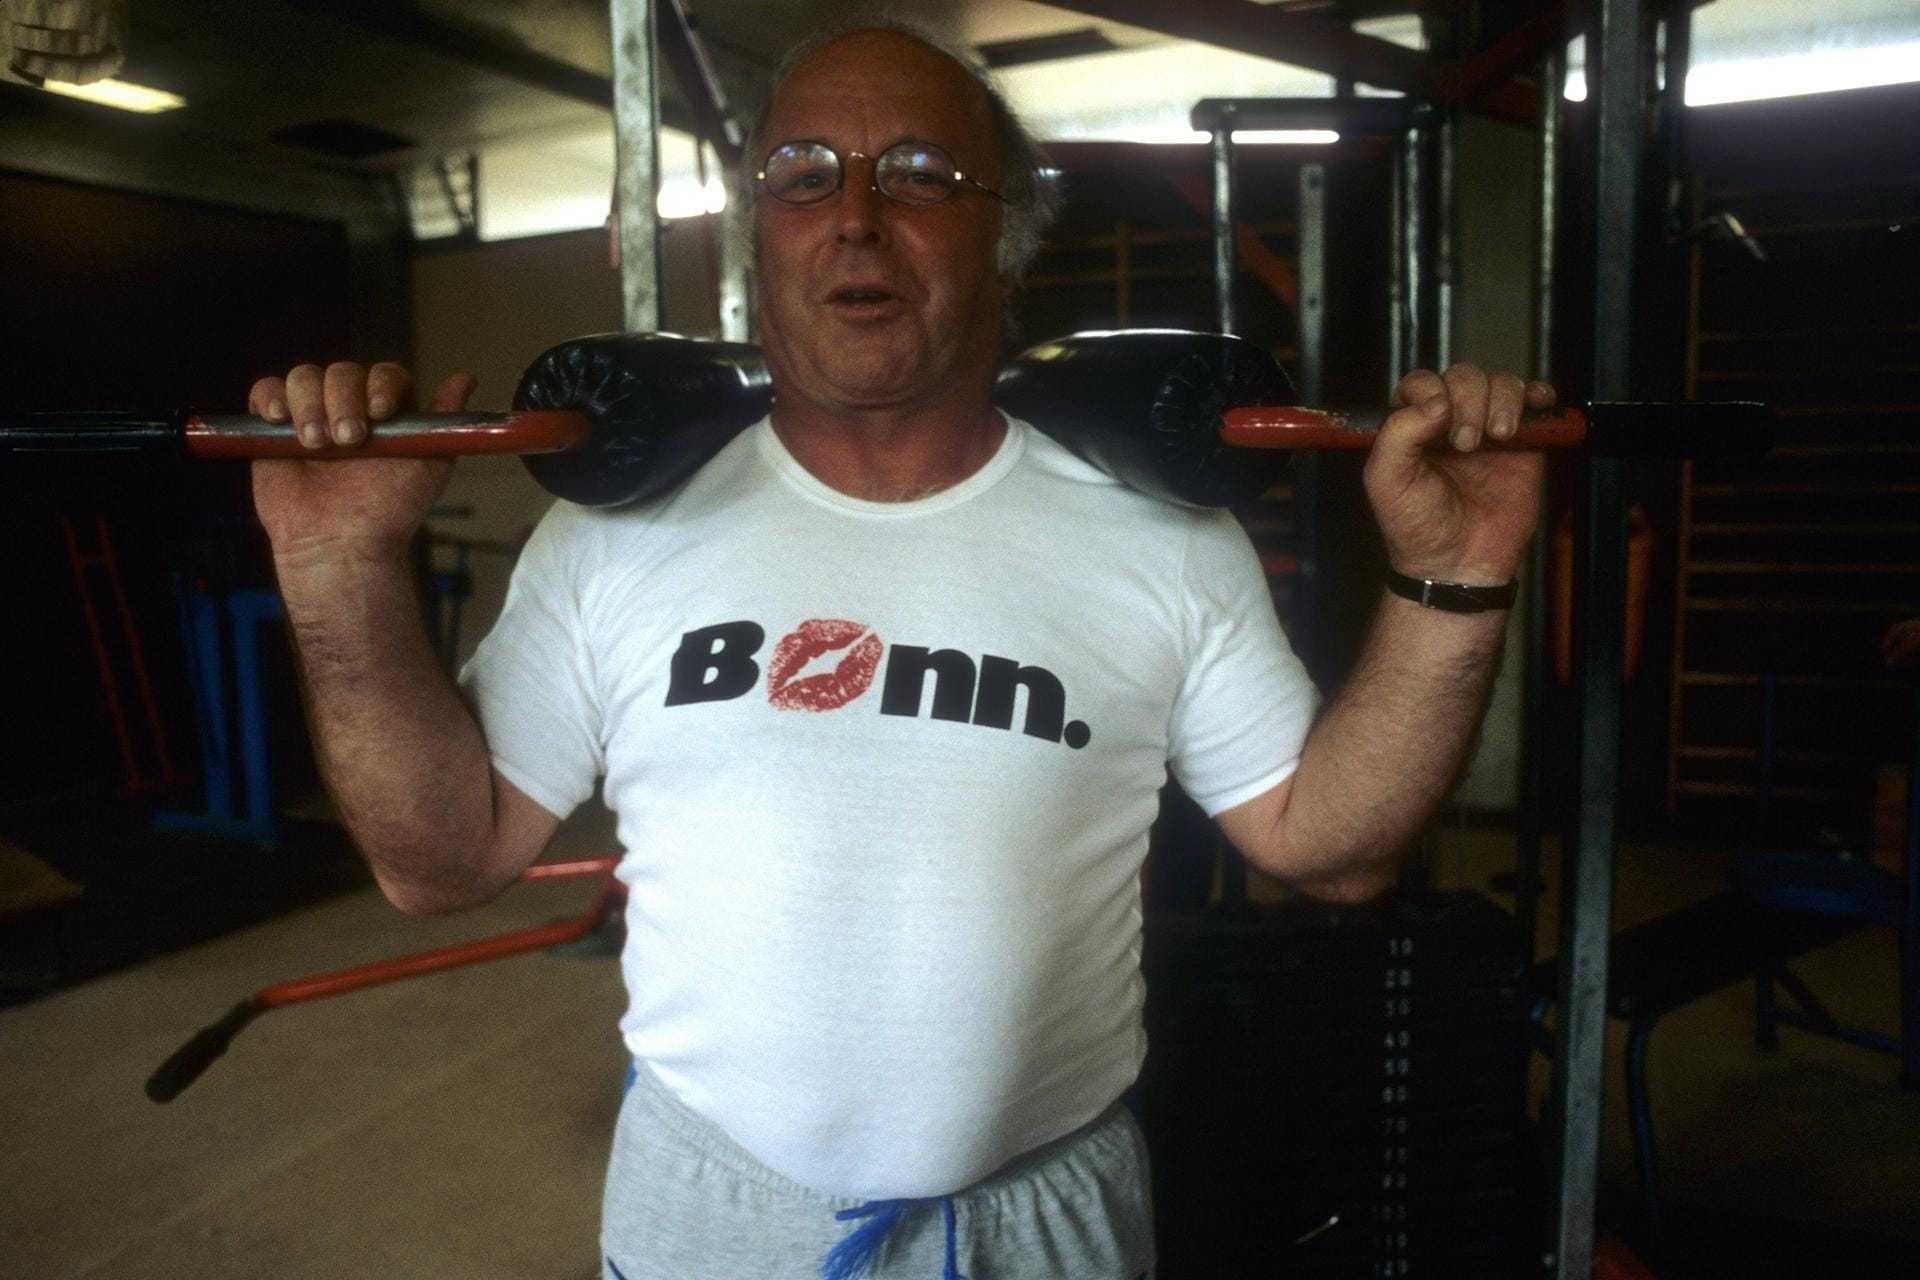 1984: Mit Stolz trägt Blüm ein T-Shirt mit der Aufschrift "Bonn". In der ehemaligen Bundeshauptstadt am Rhein lebte er mit Frau und drei Kindern.